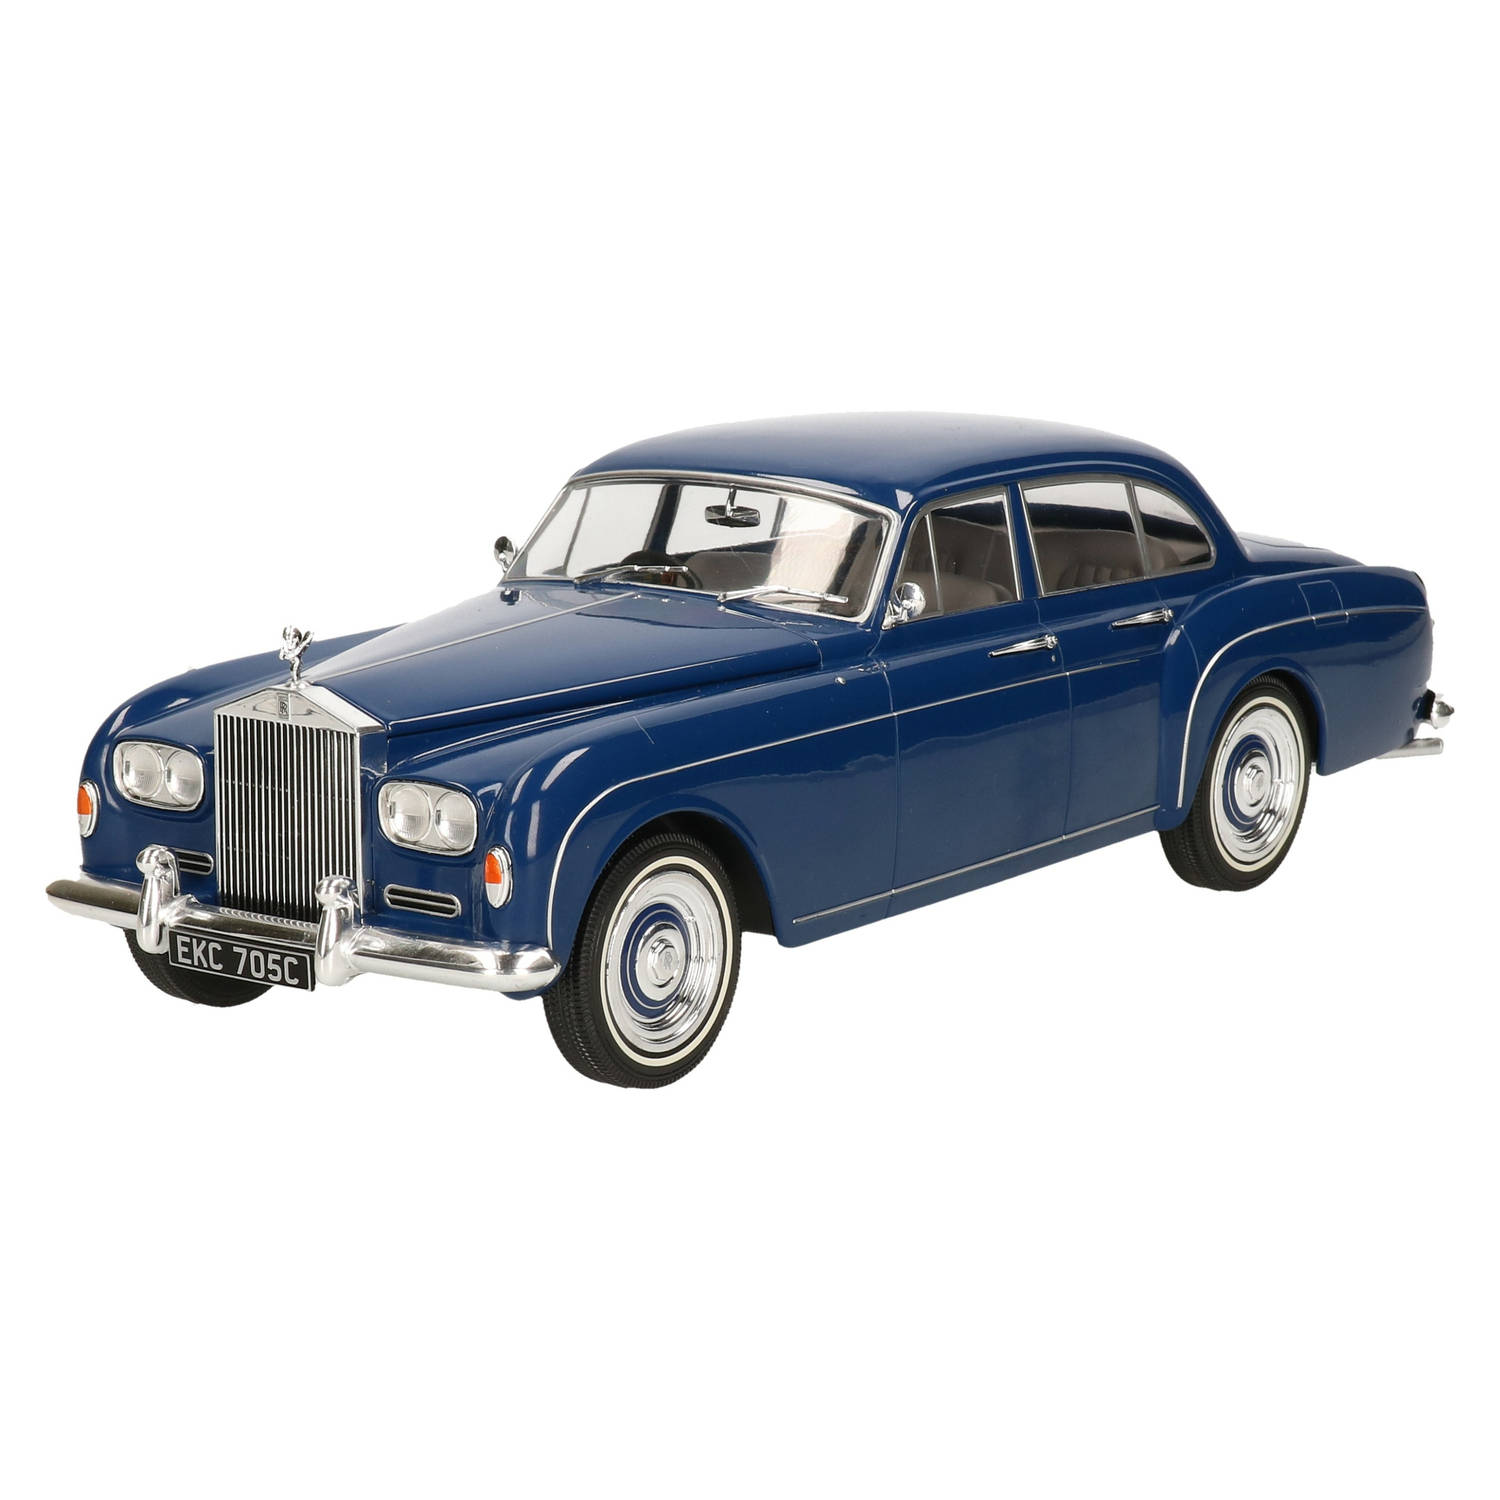 Het 1:18 gegoten model van de Rolls Royce Silver Cloud III H.J. Mulliner uit 1965 in blauw. De fabrikant van het schaalmodel is MCG. Dit model is alleen online verkrijgbaar